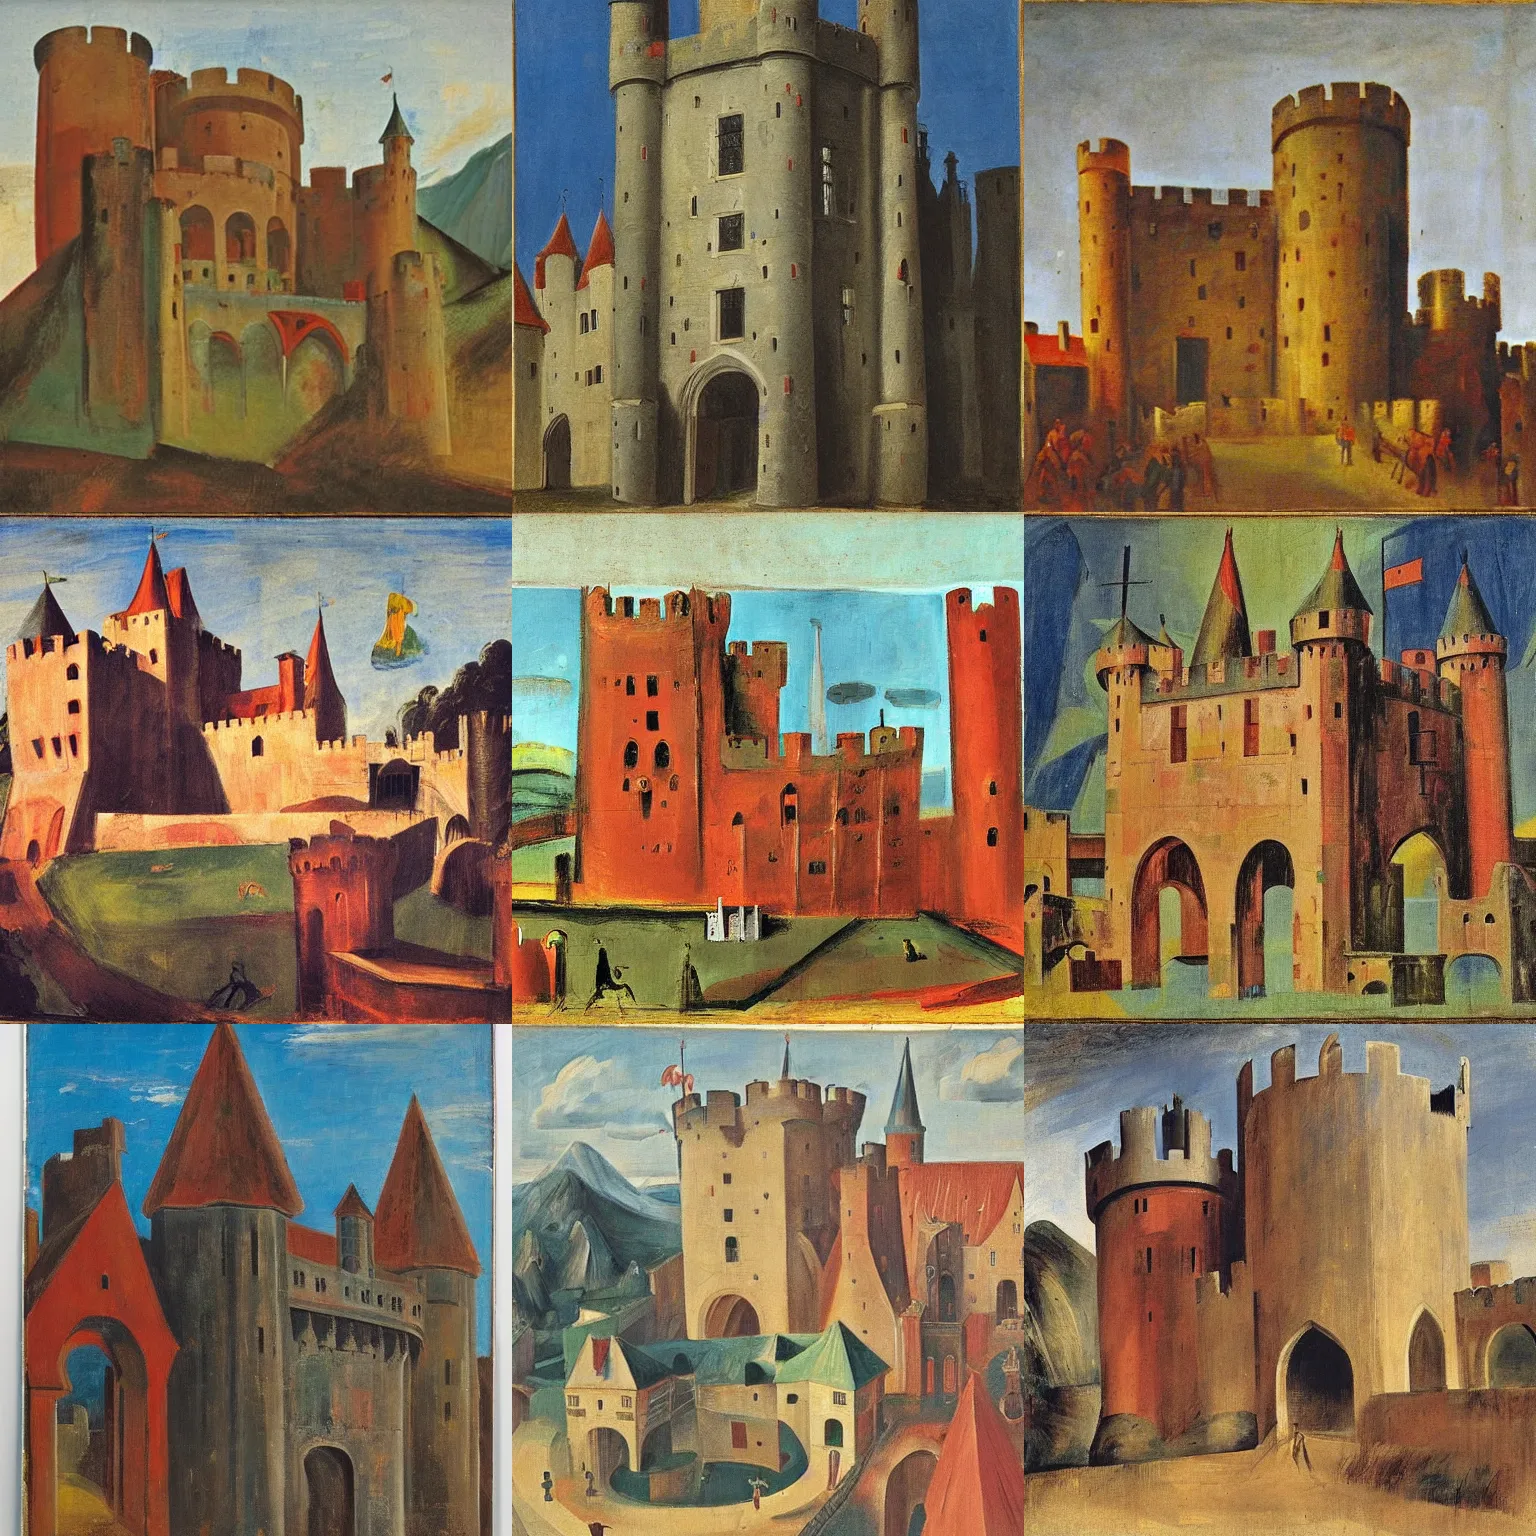 Prompt: medieval castle, by willem de kooning